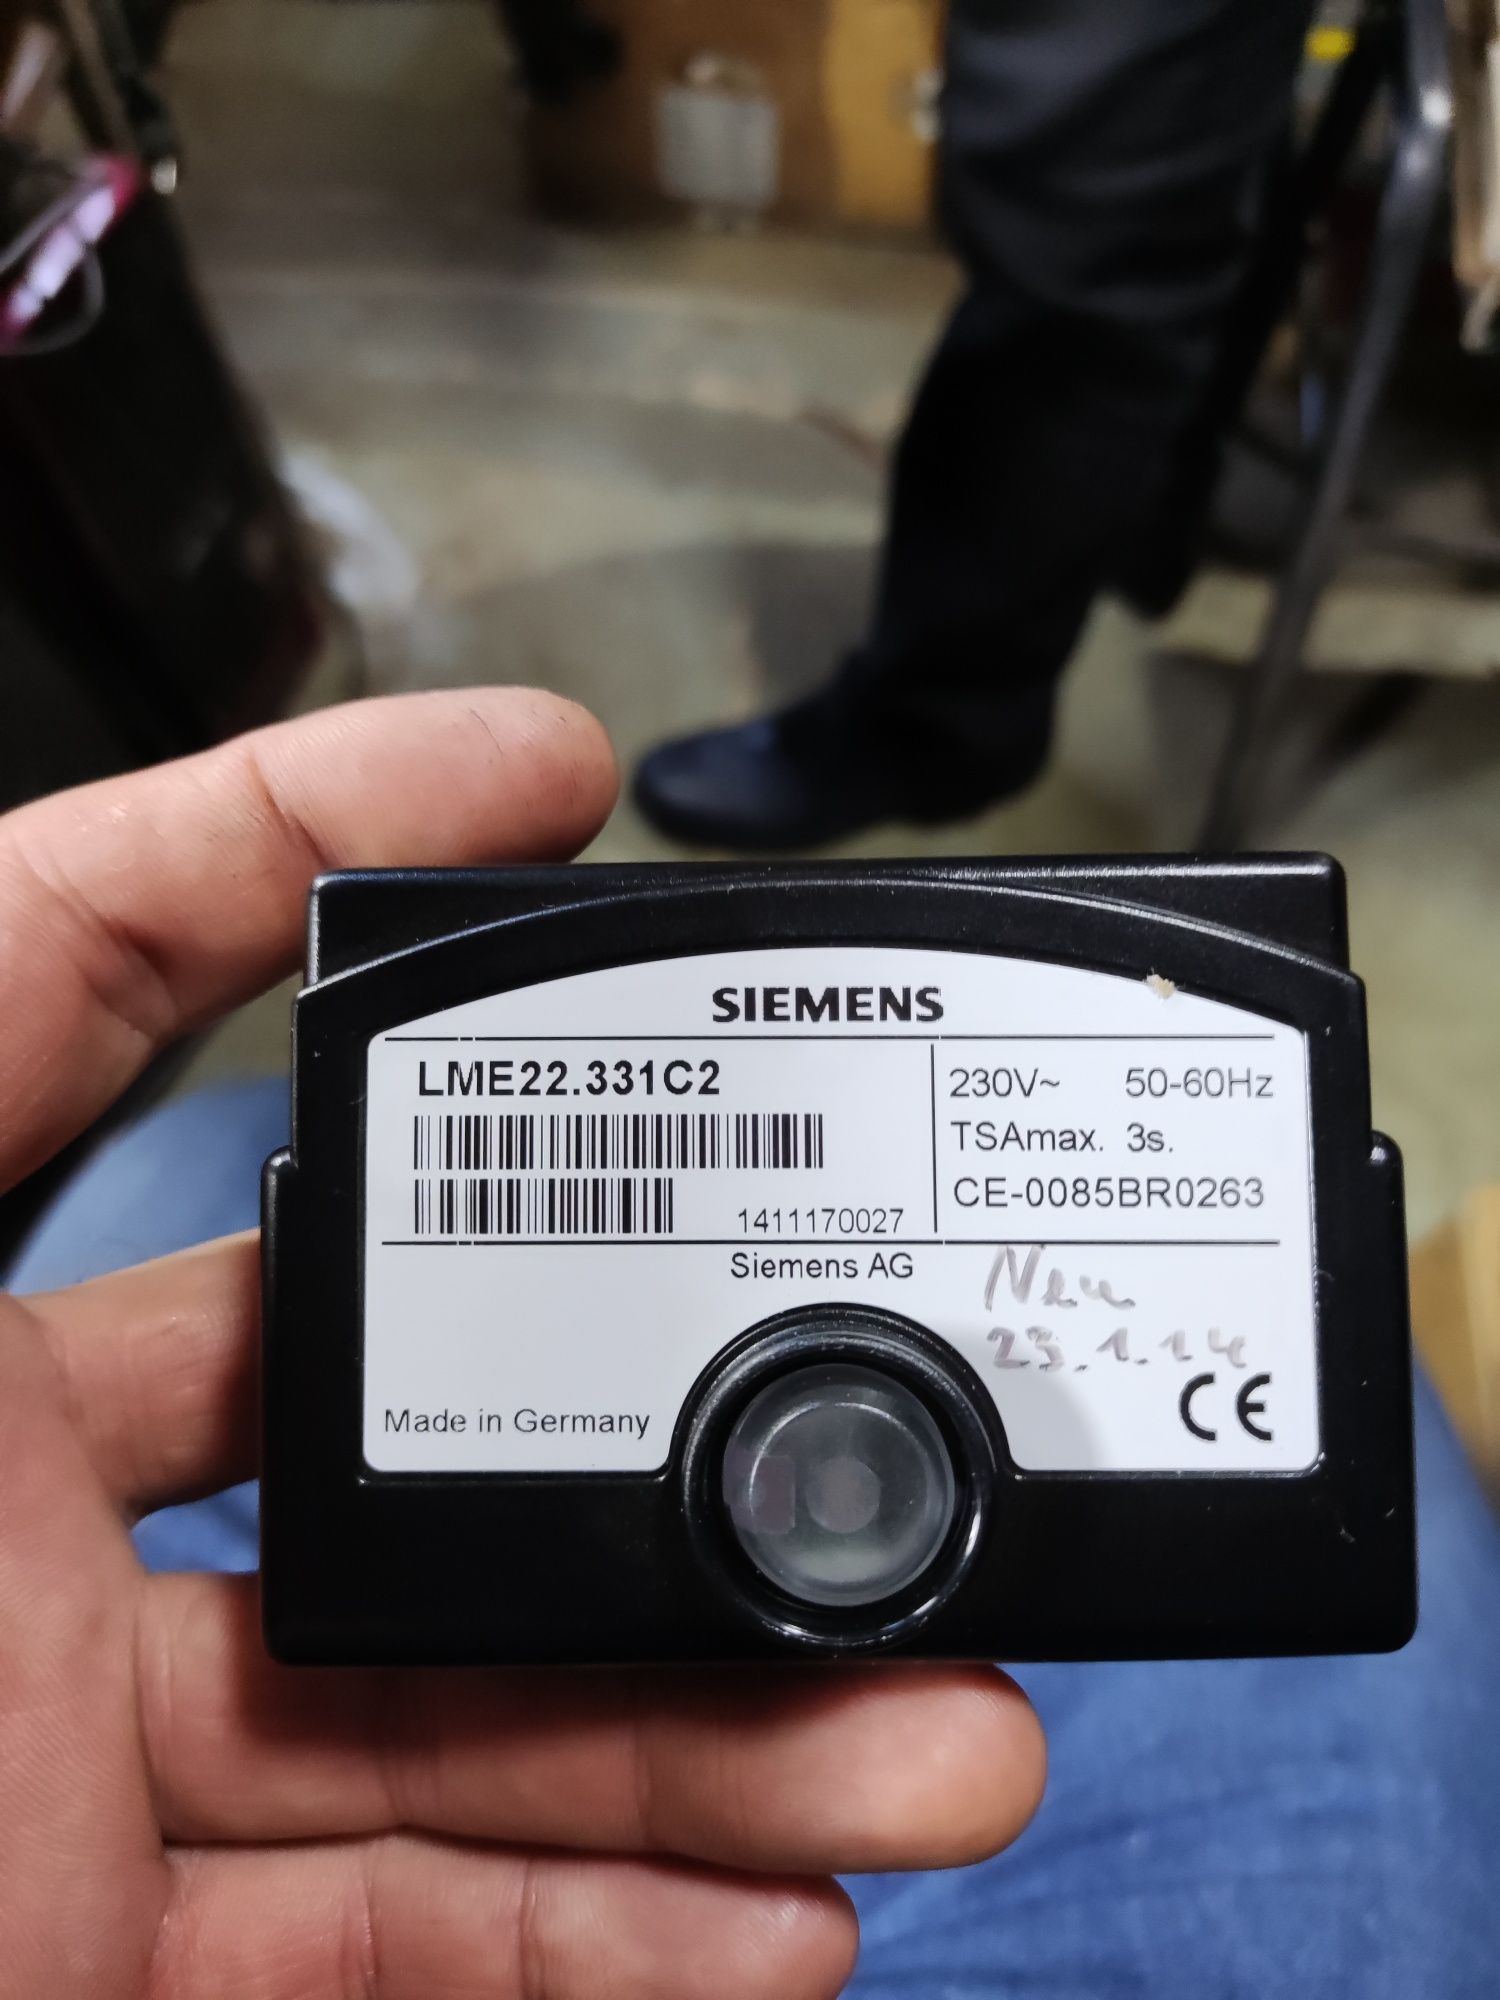 Продается топочный контроллер Siemens  lme22. 331 c2